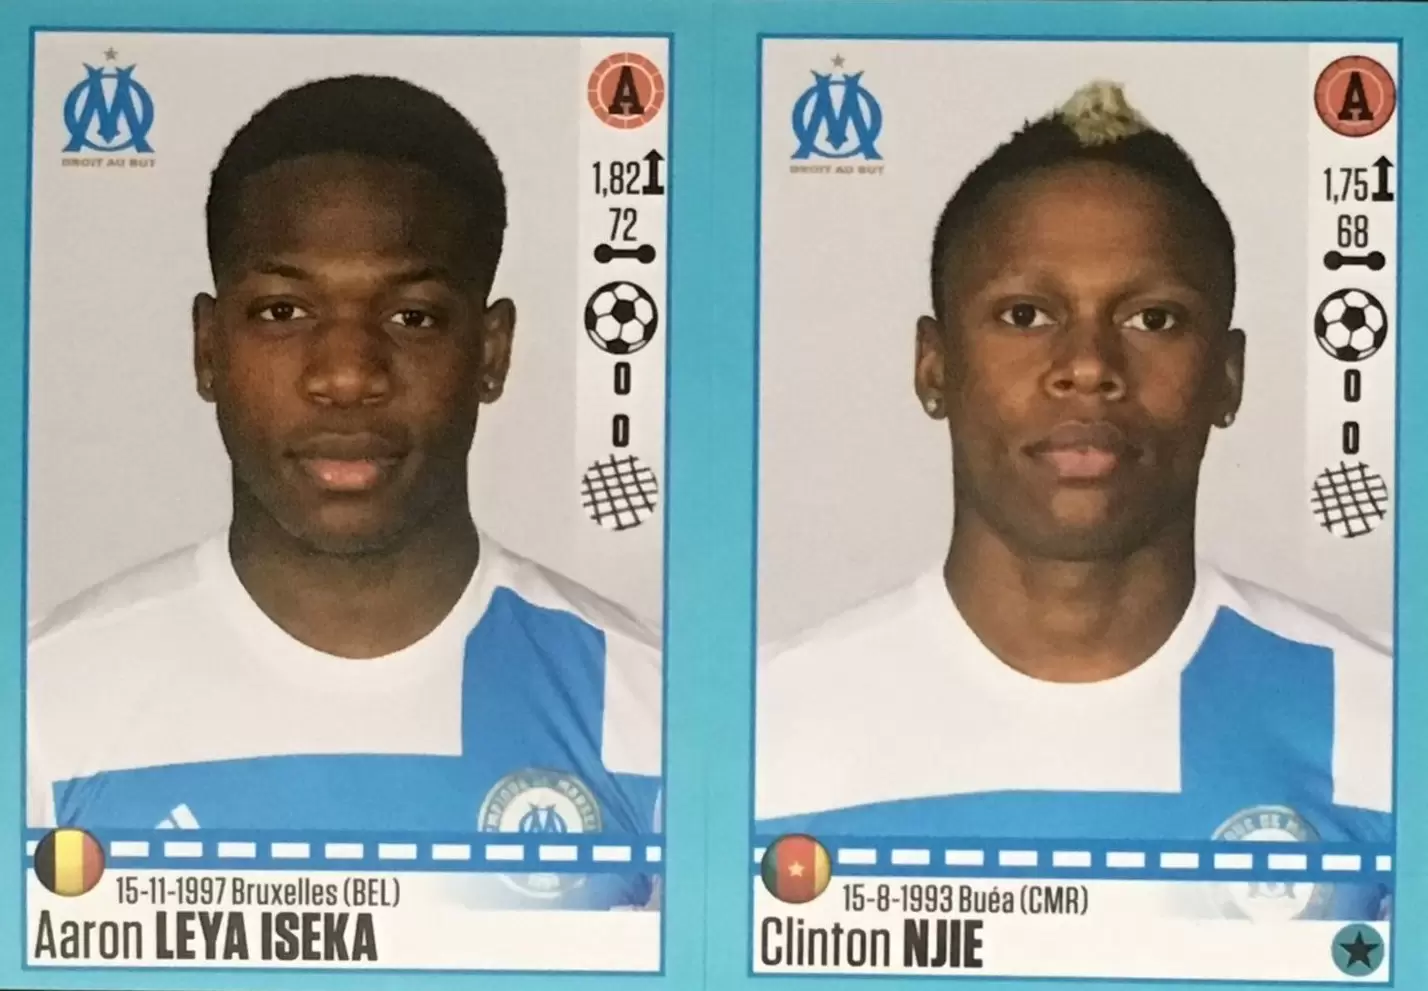 Foot 2016-17 (France) - Aaron Leya Iseka - Clinton Njie - Marseille